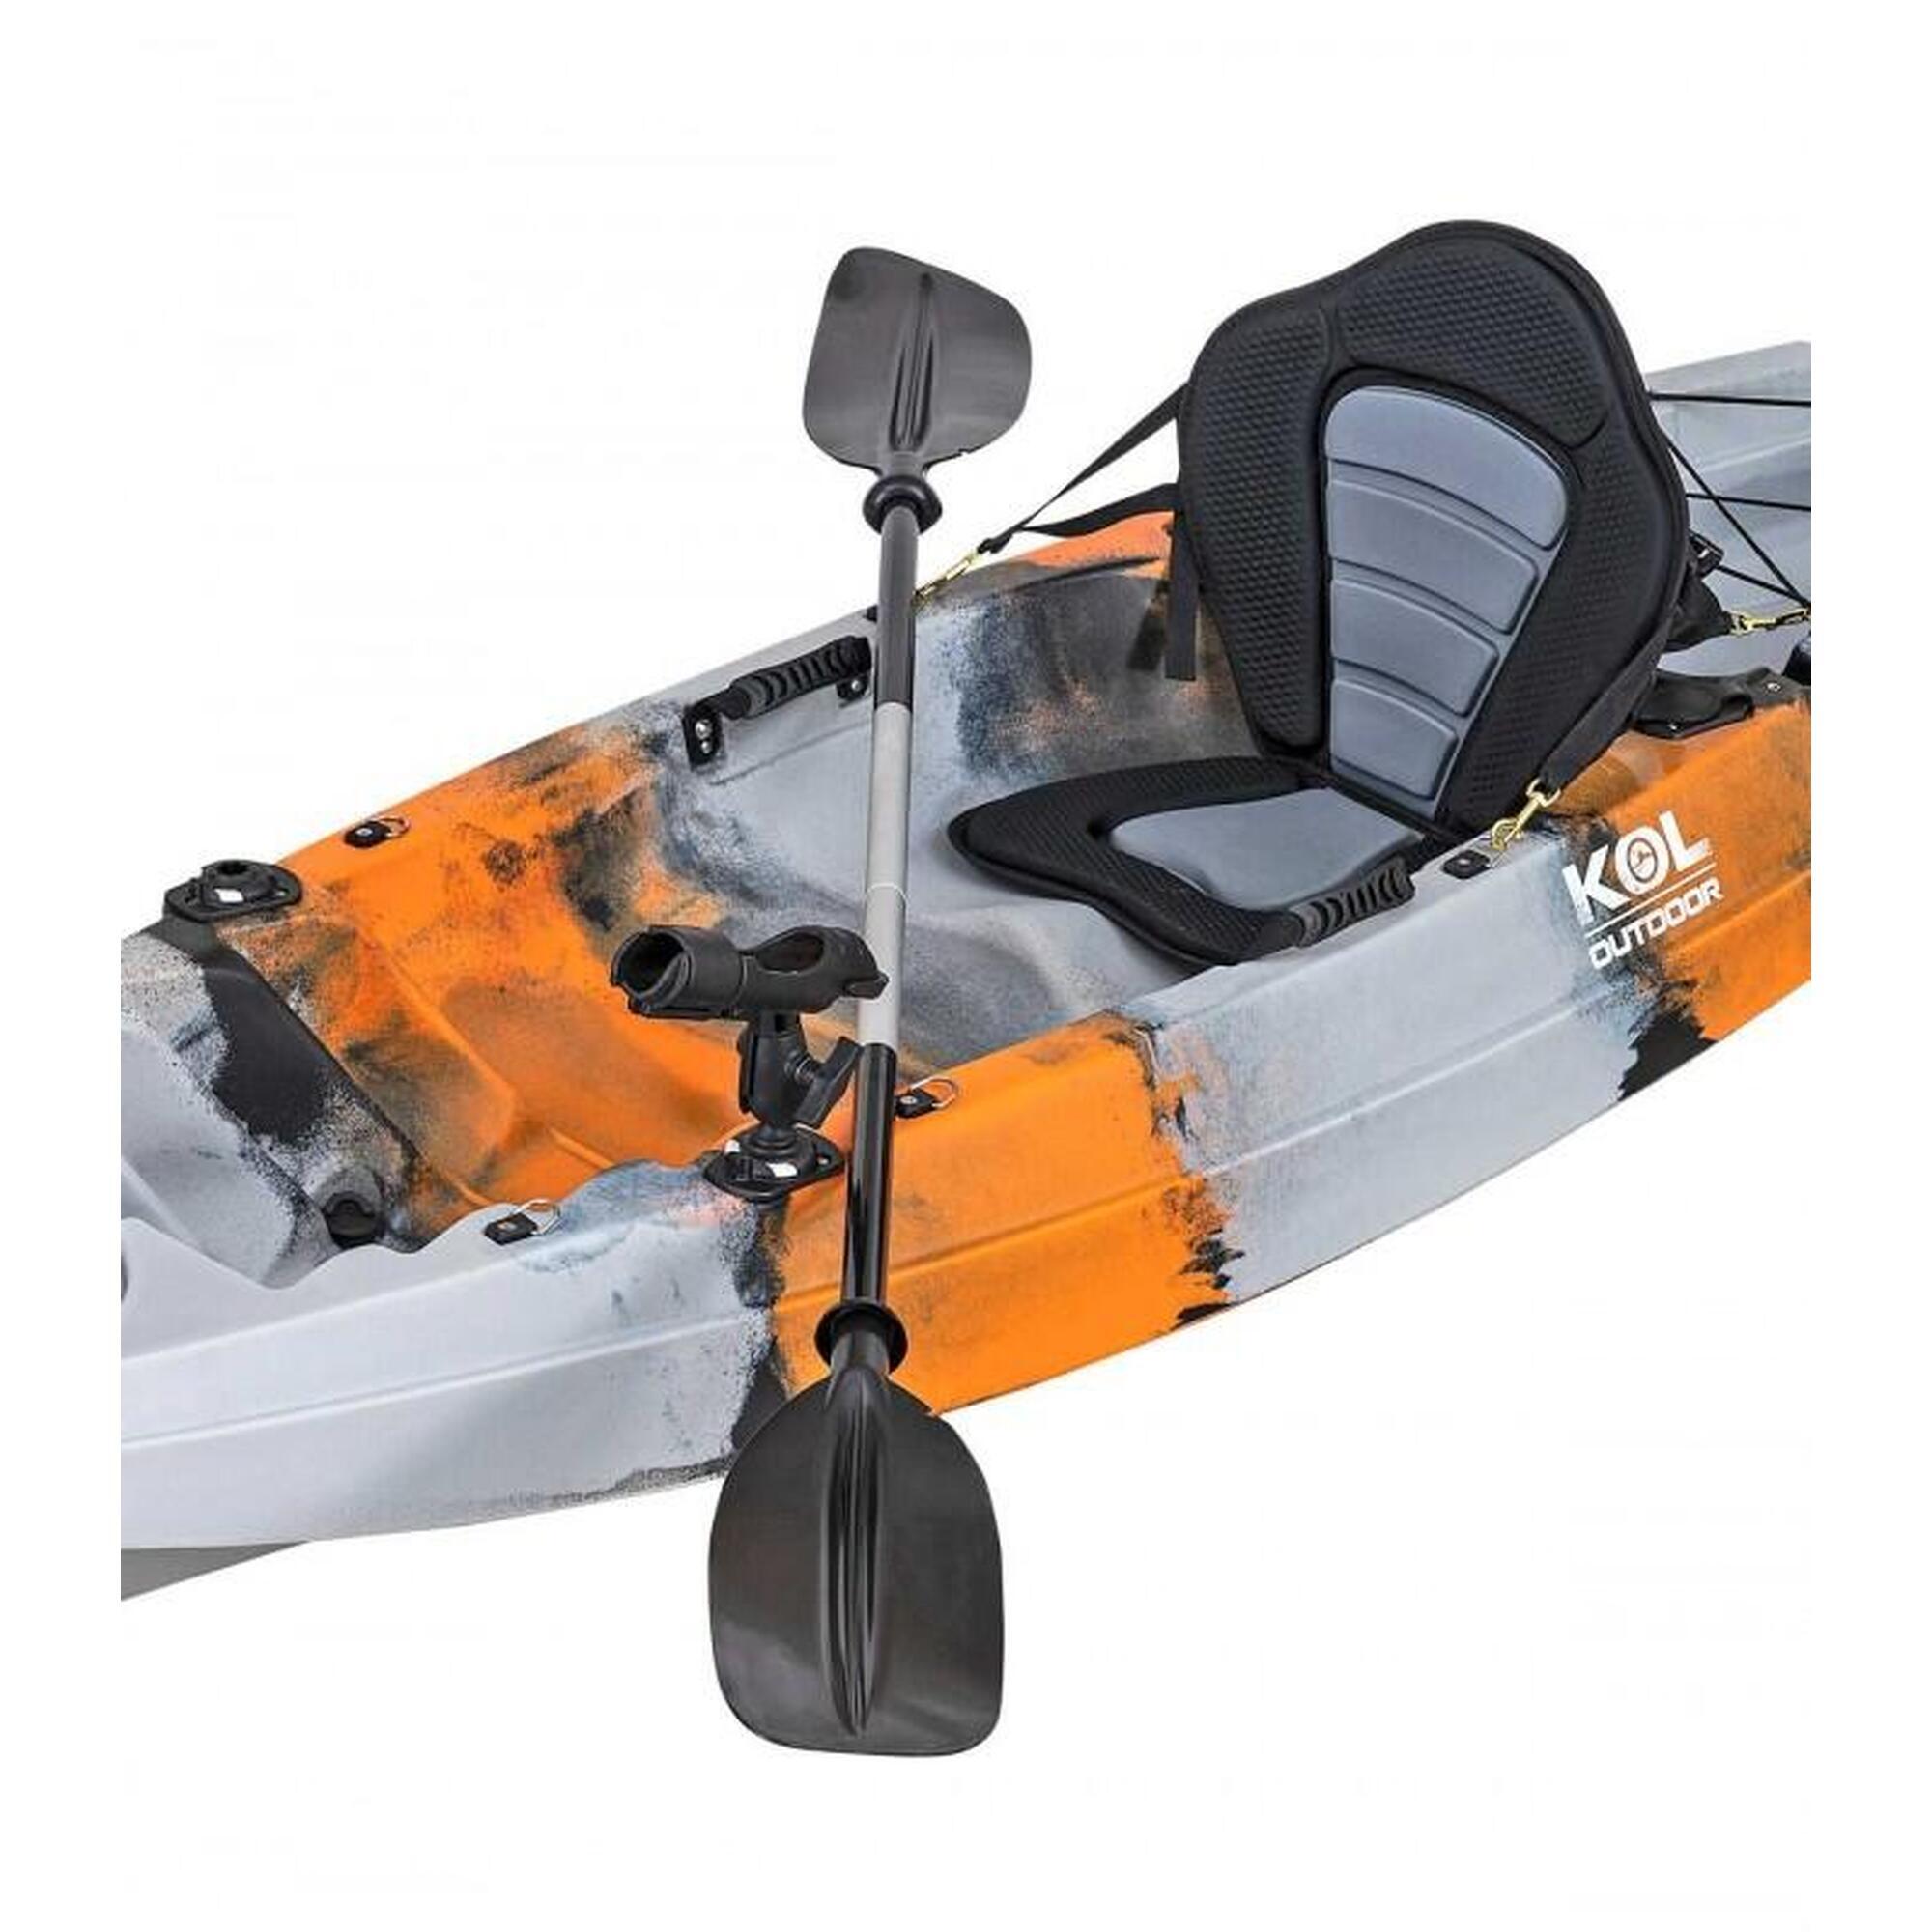 Kayak para pesca currican 315x77cm, Naranja Gris. Con asiento, remo y cañeros.